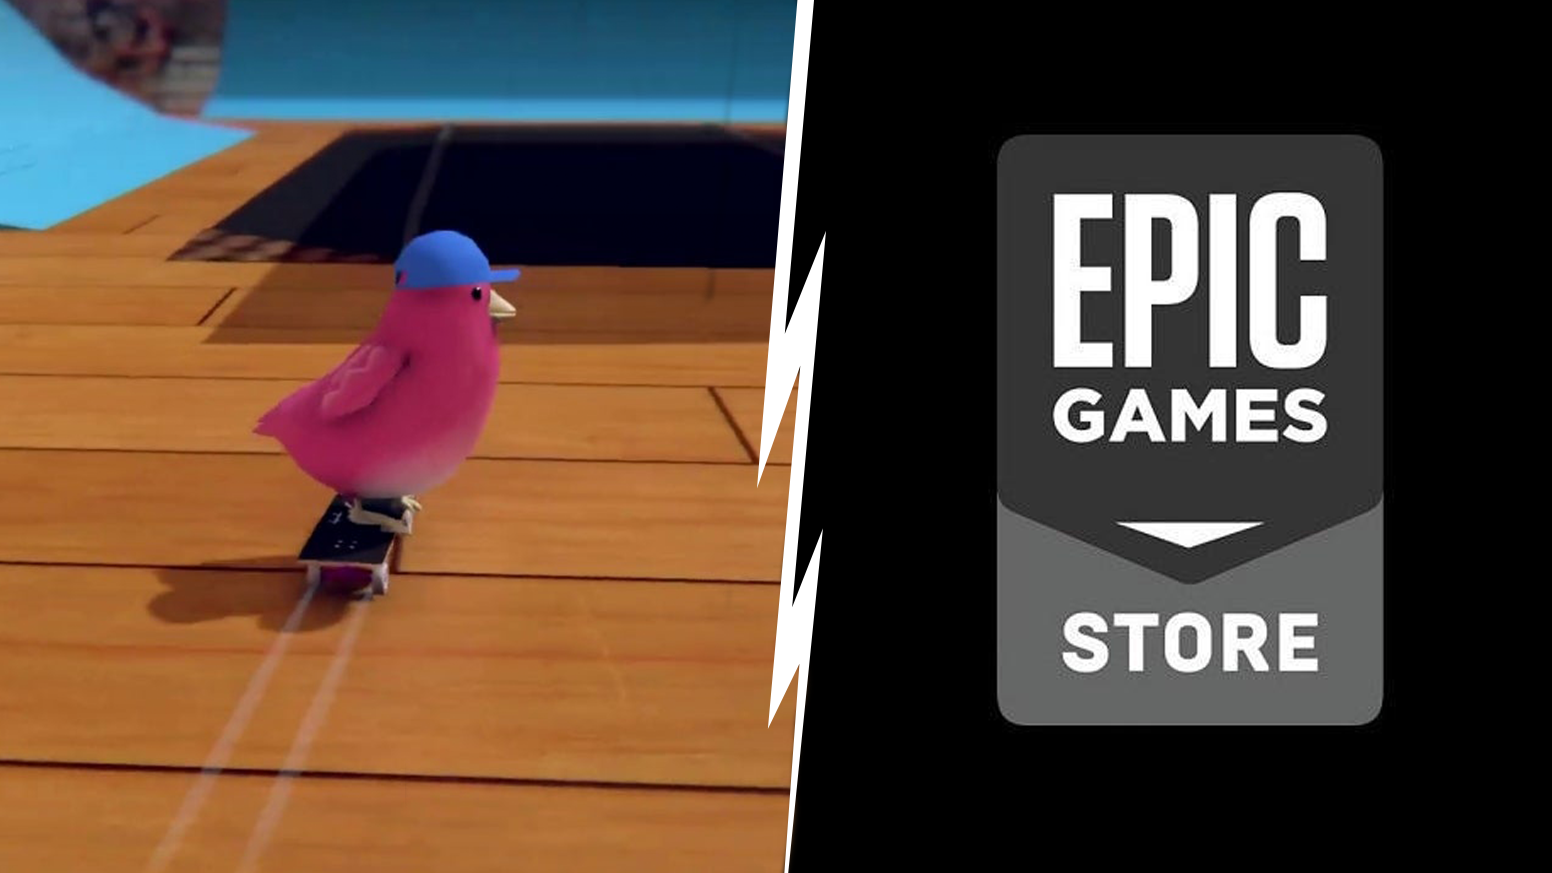 Epic Games Store stawia na tytuły ekskluzywne, o czym wiadomo już od dawna. - Epic Games Store odrzucił grę, której twórcy nie chcieli opuścić Steama - wiadomość - 2019-08-01